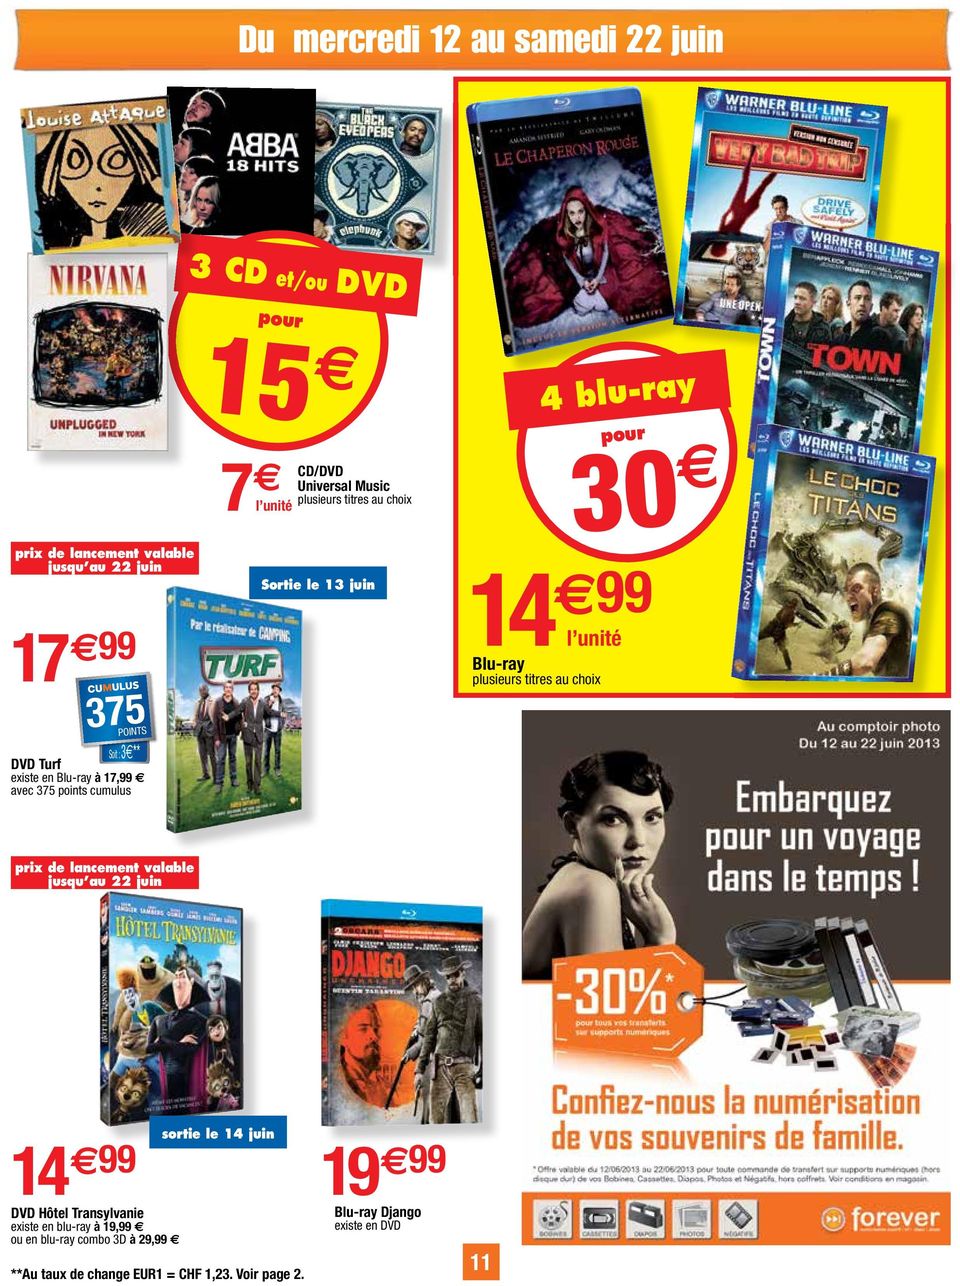 14 99 l unité Blu-ray plusieurs titres au choix prix de lancement valable jusqu au 22 juin 14 99 DVD Hôtel Transylvanie existe en blu ray